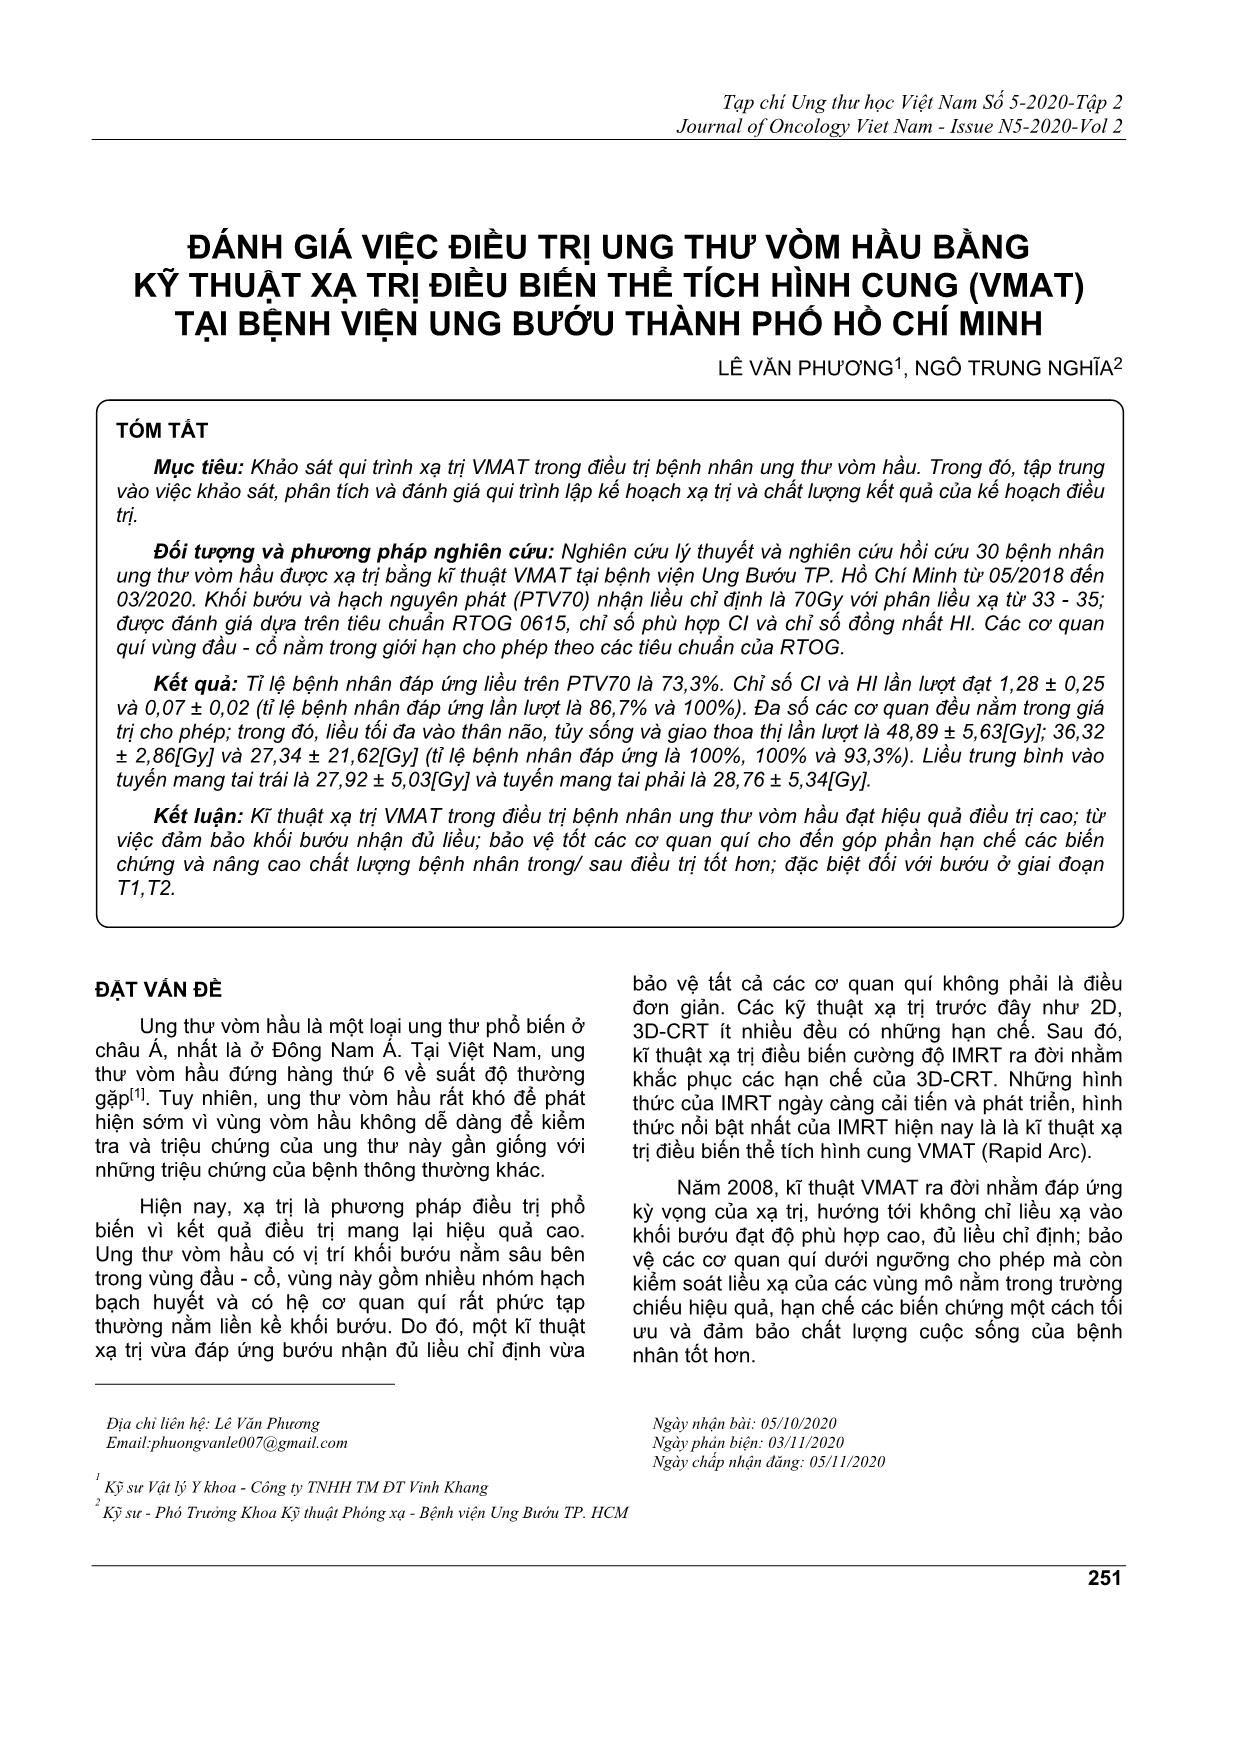 Đánh giá việc điều trị ung thư vòm hầu bằng kỹ thuật xạ trị điều biến thể tích hình cung (vmat) tại bệnh viện ung bướu thành phố Hồ Chí Minh trang 1